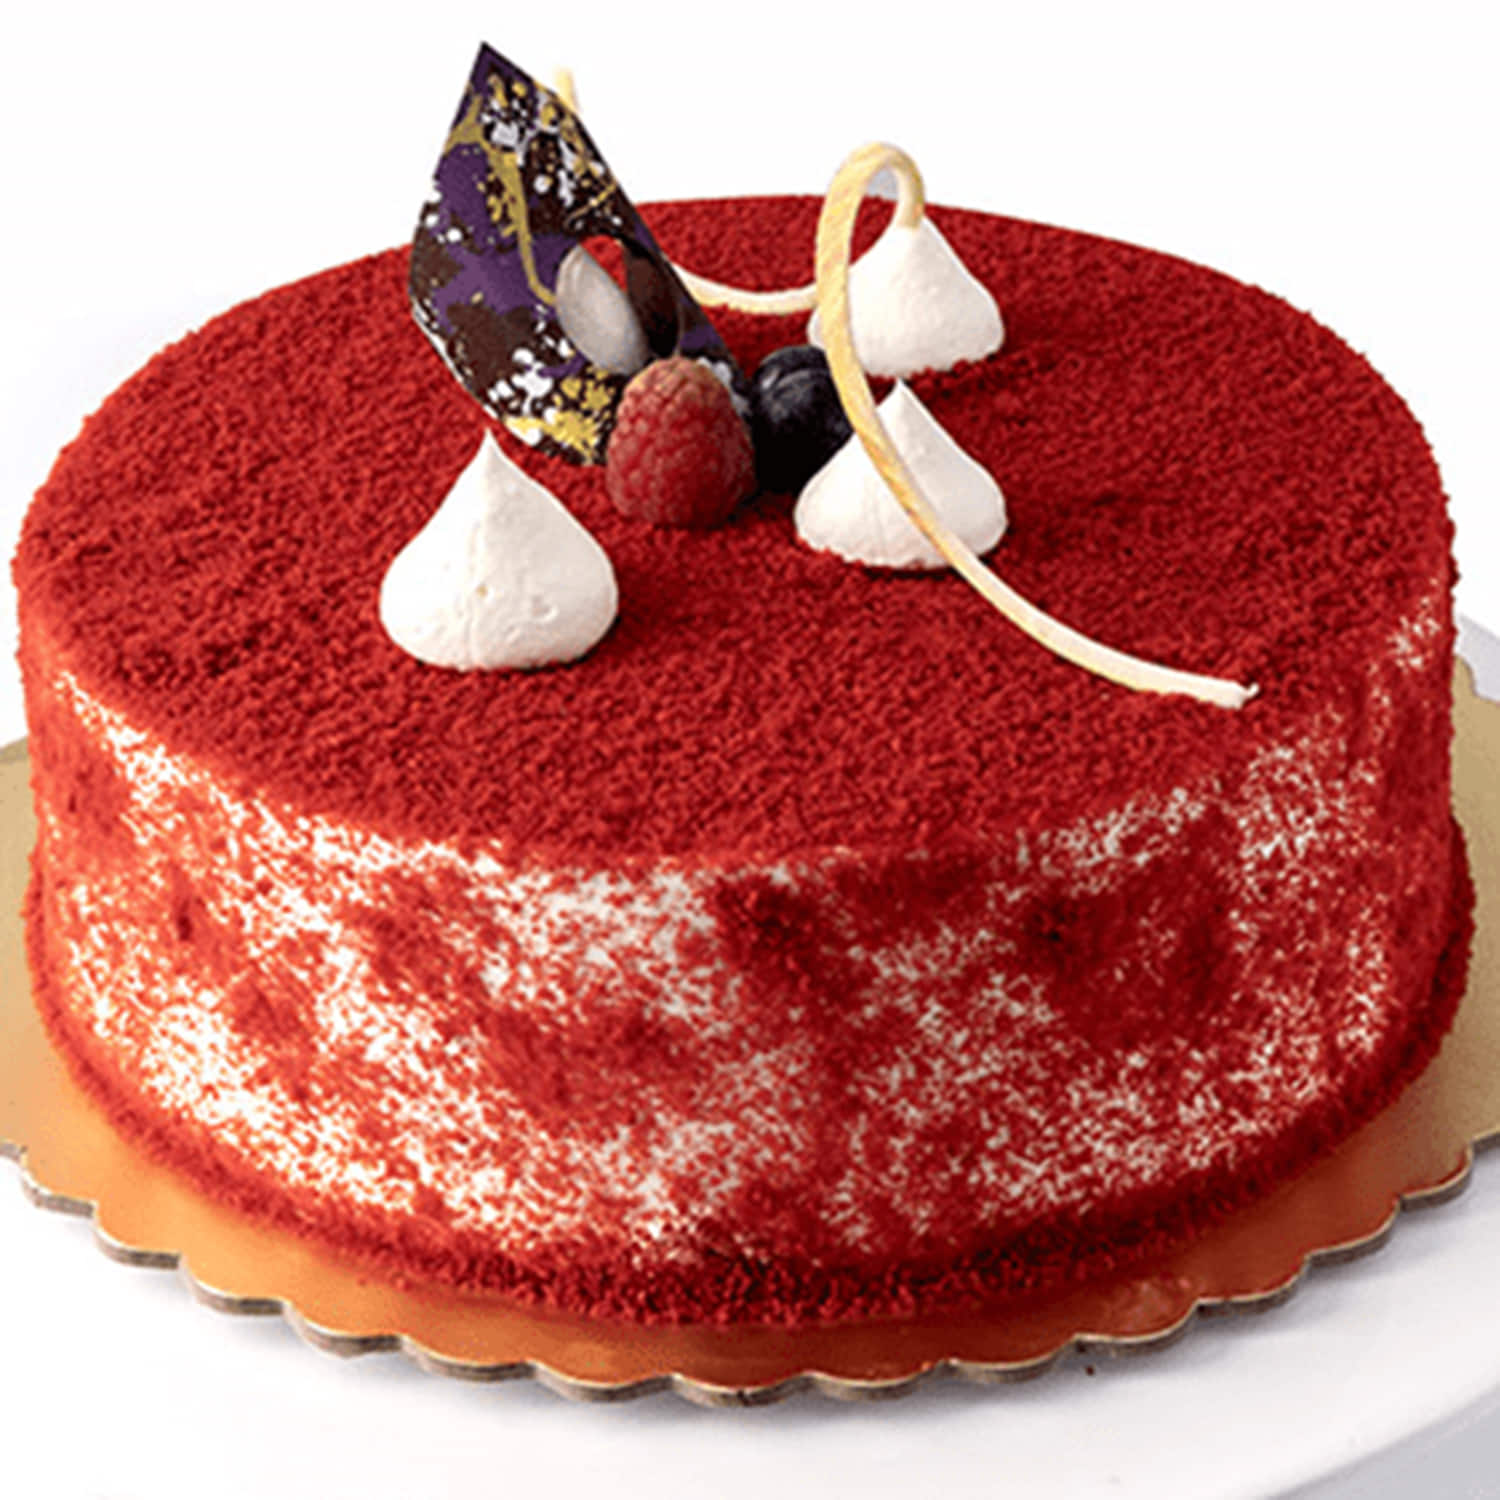 Details 71+ red cream cake